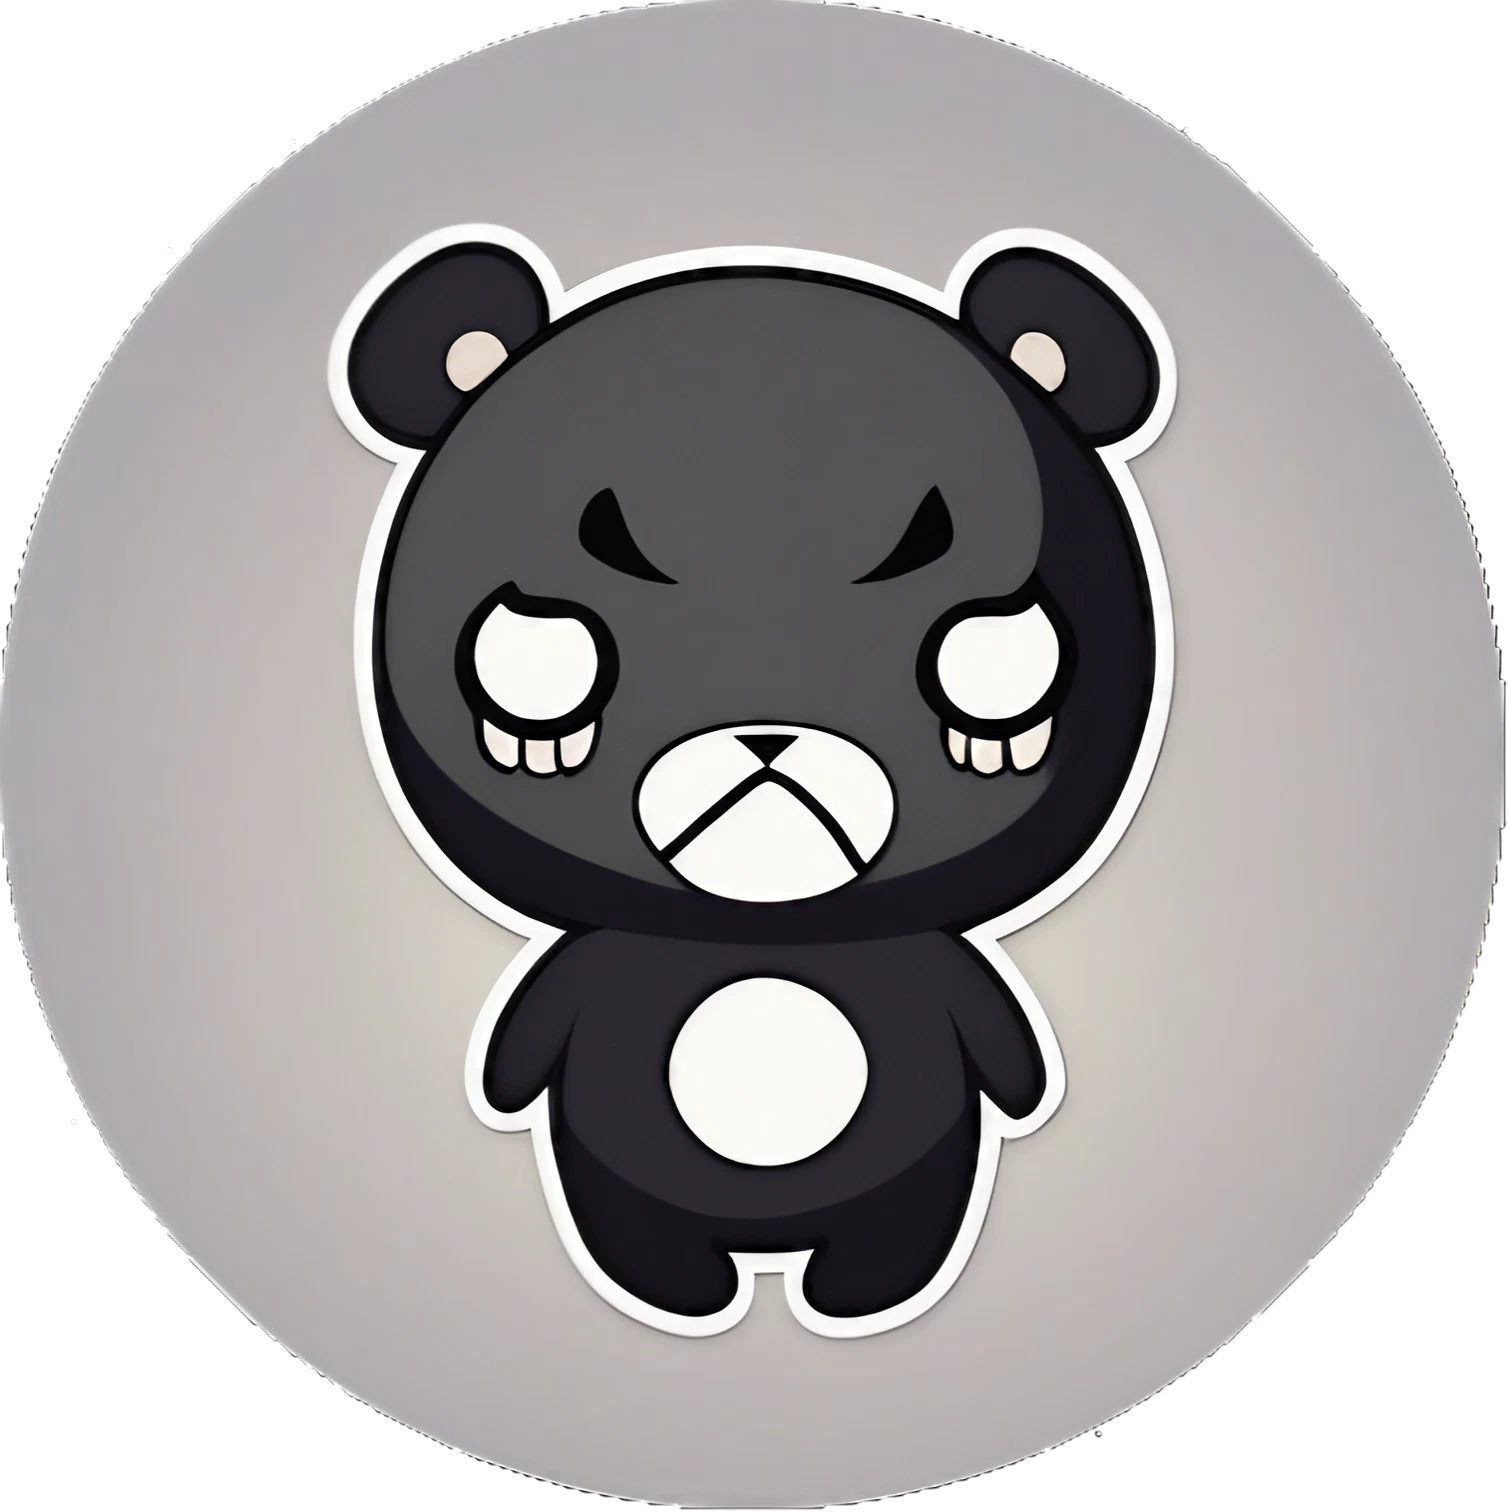 Böser Kawaii Teddybär - Ich nehme einen Kartoffelchip und esse ihn - Sticker - 3x3cm